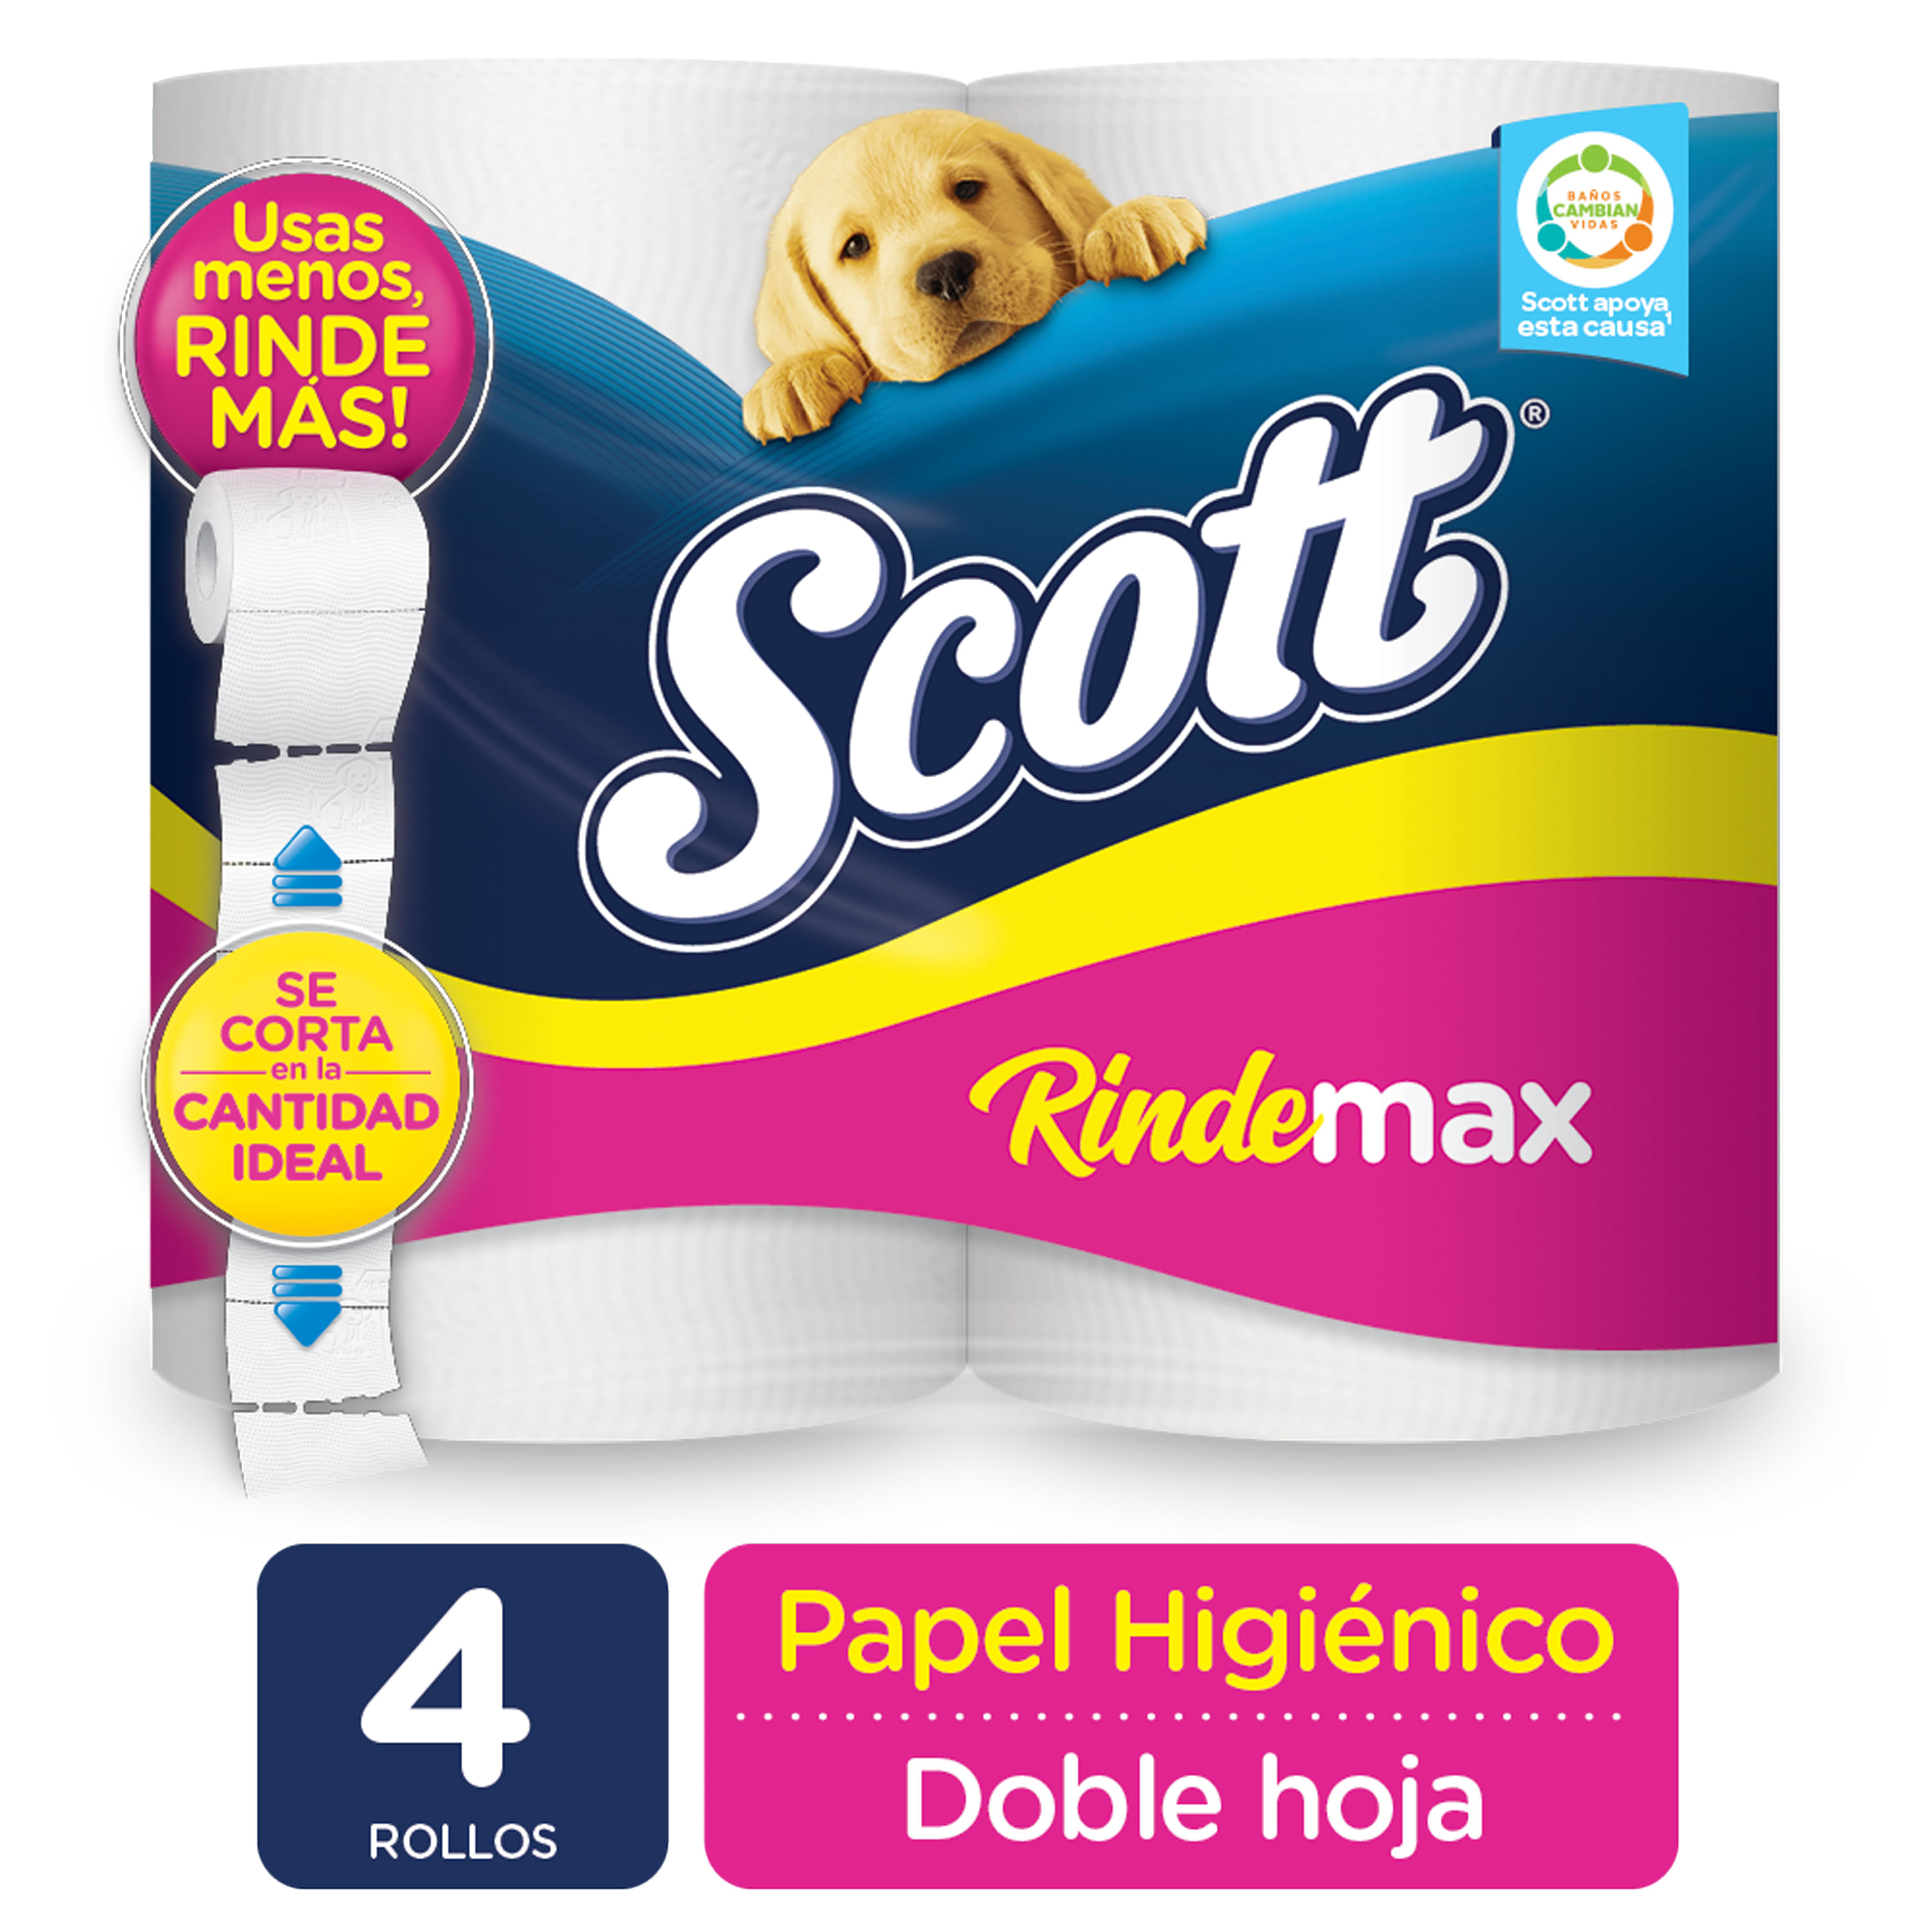 ▷ Chollo Pack x48 Rollos Papel higiénico Scottex Megarollo por sólo 23,97€  con envío gratis ¡Sólo 0,50€ por rollo!